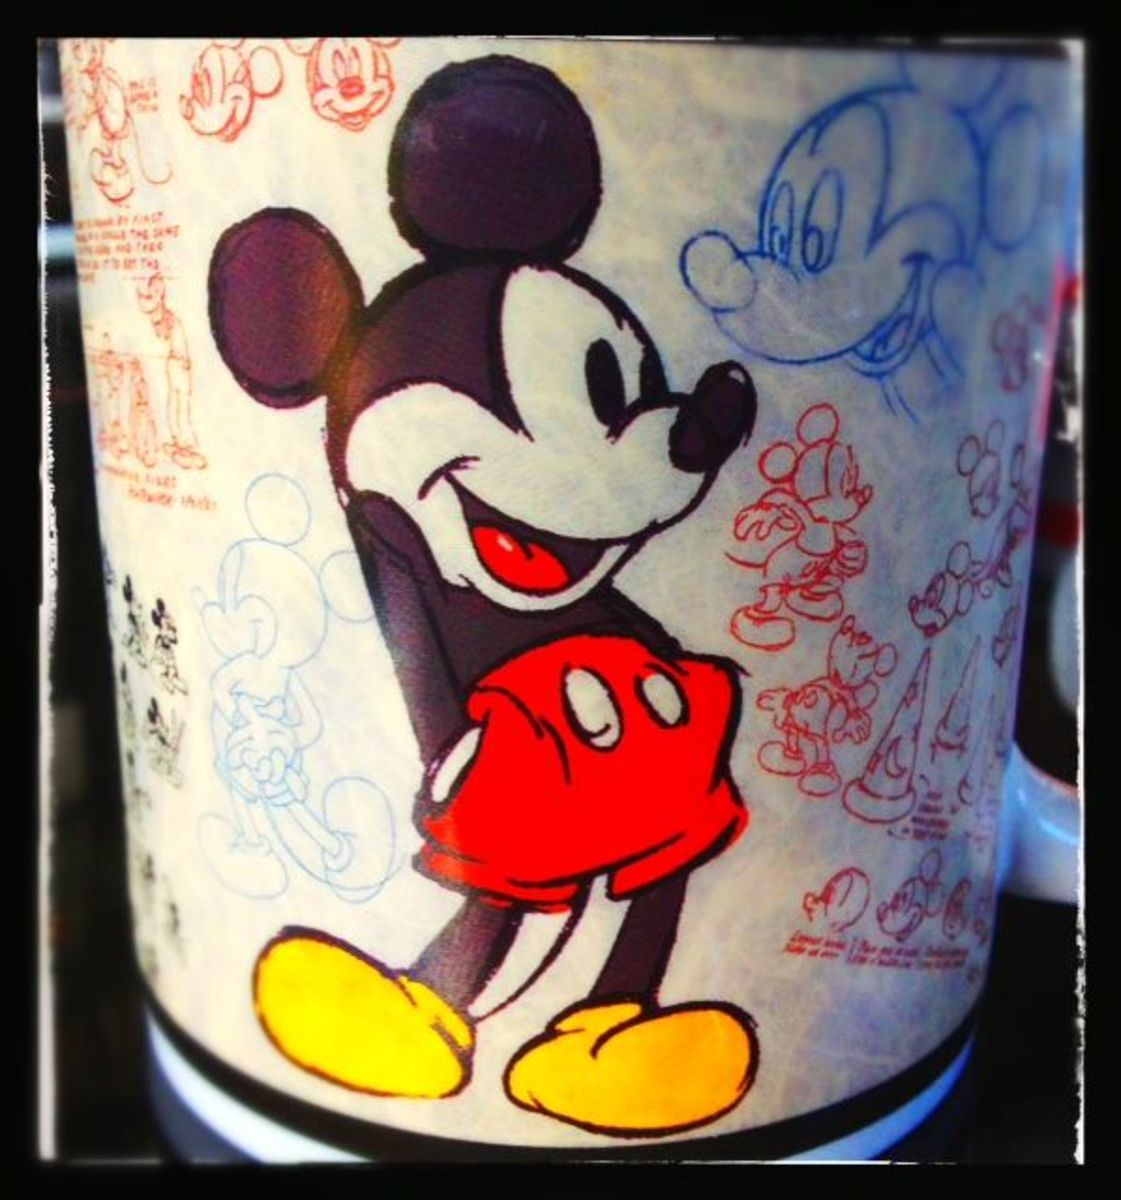 disney mug